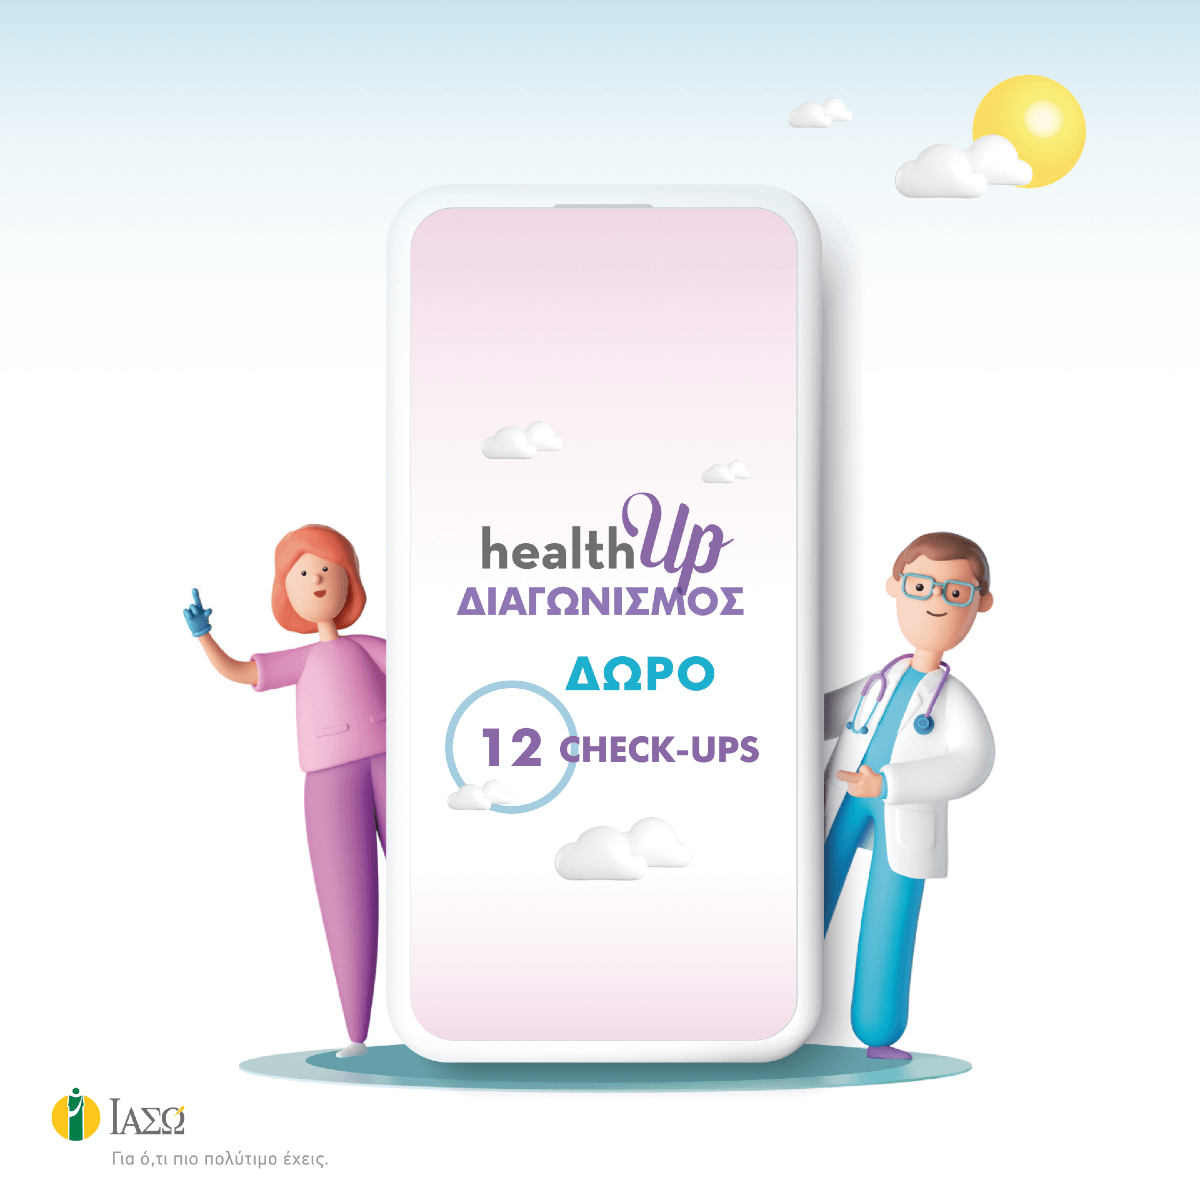 Το ΙΑΣΩ γιορτάζει την Παγκόσμια Ημέρα Υγείας με διαγωνισμό στα Social Media για τη διενέργεια Check-up με στόχο την πρόληψη της υγεία σας